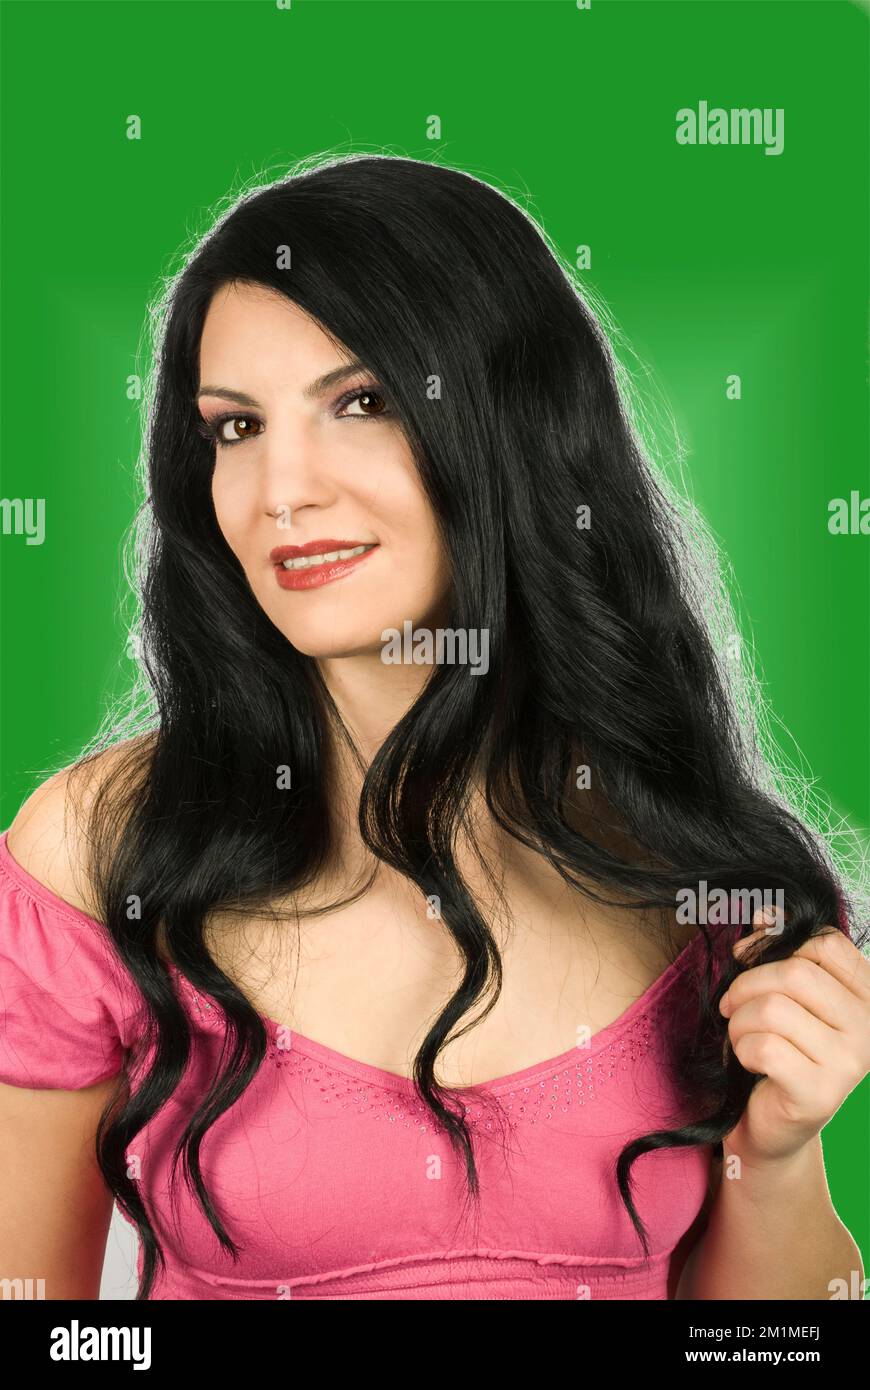 Belle femme avec de longs cheveux brillants noirs souriant et vous regardant isolé sur fond blanc Banque D'Images